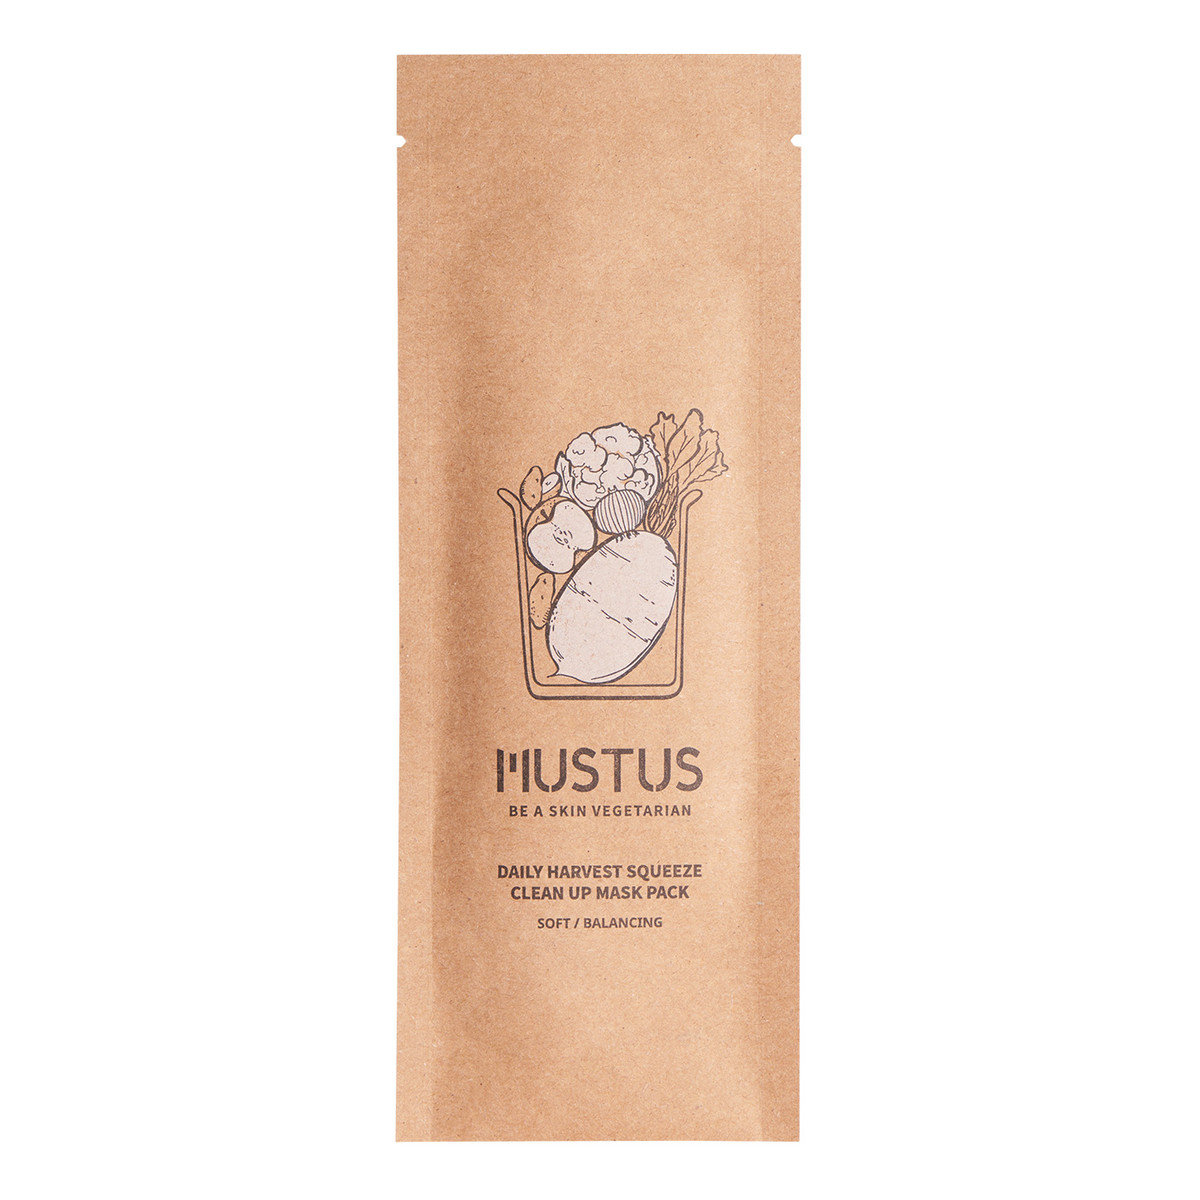 Mustus BE A SKIN VEGETARIAN! Daily Harvest Squeeze Clean Up Maseczka w płachcie wygładzająca, stworzona na bazie kompleksu ekstraktów z białych warzyw i owoców 20g